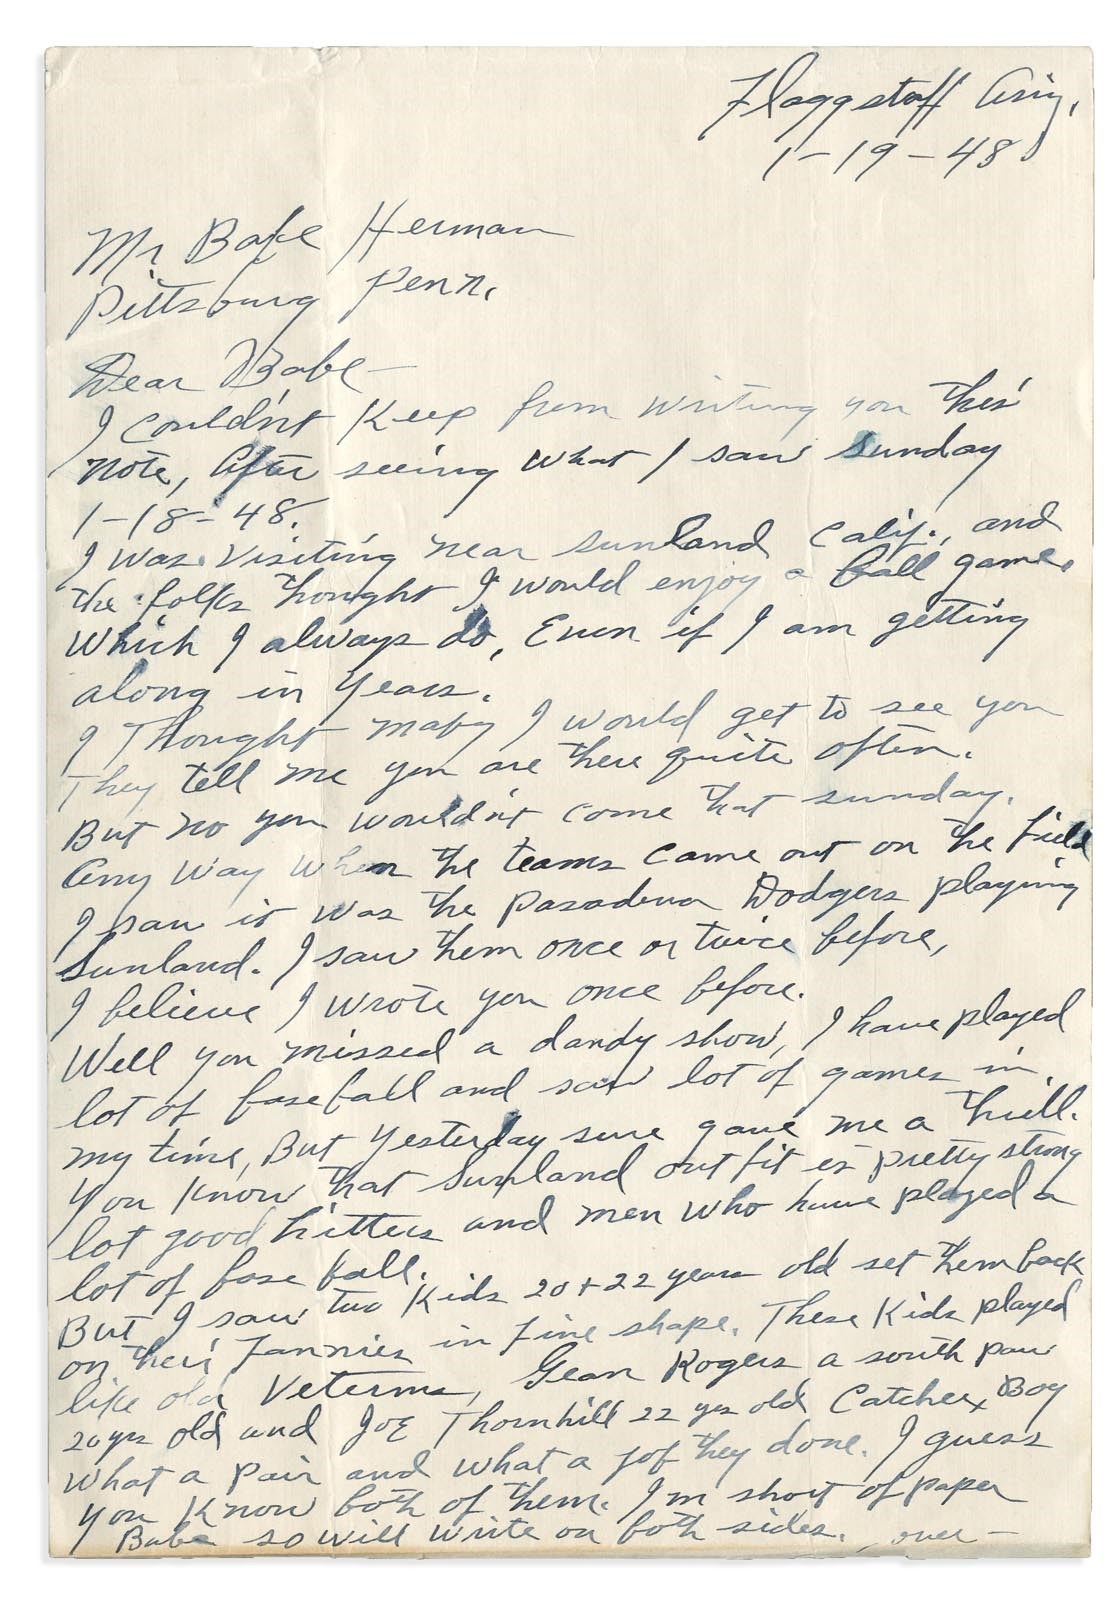 - 1948 Alex Pompez Handwritten Letter to Babe Herman (PSA)